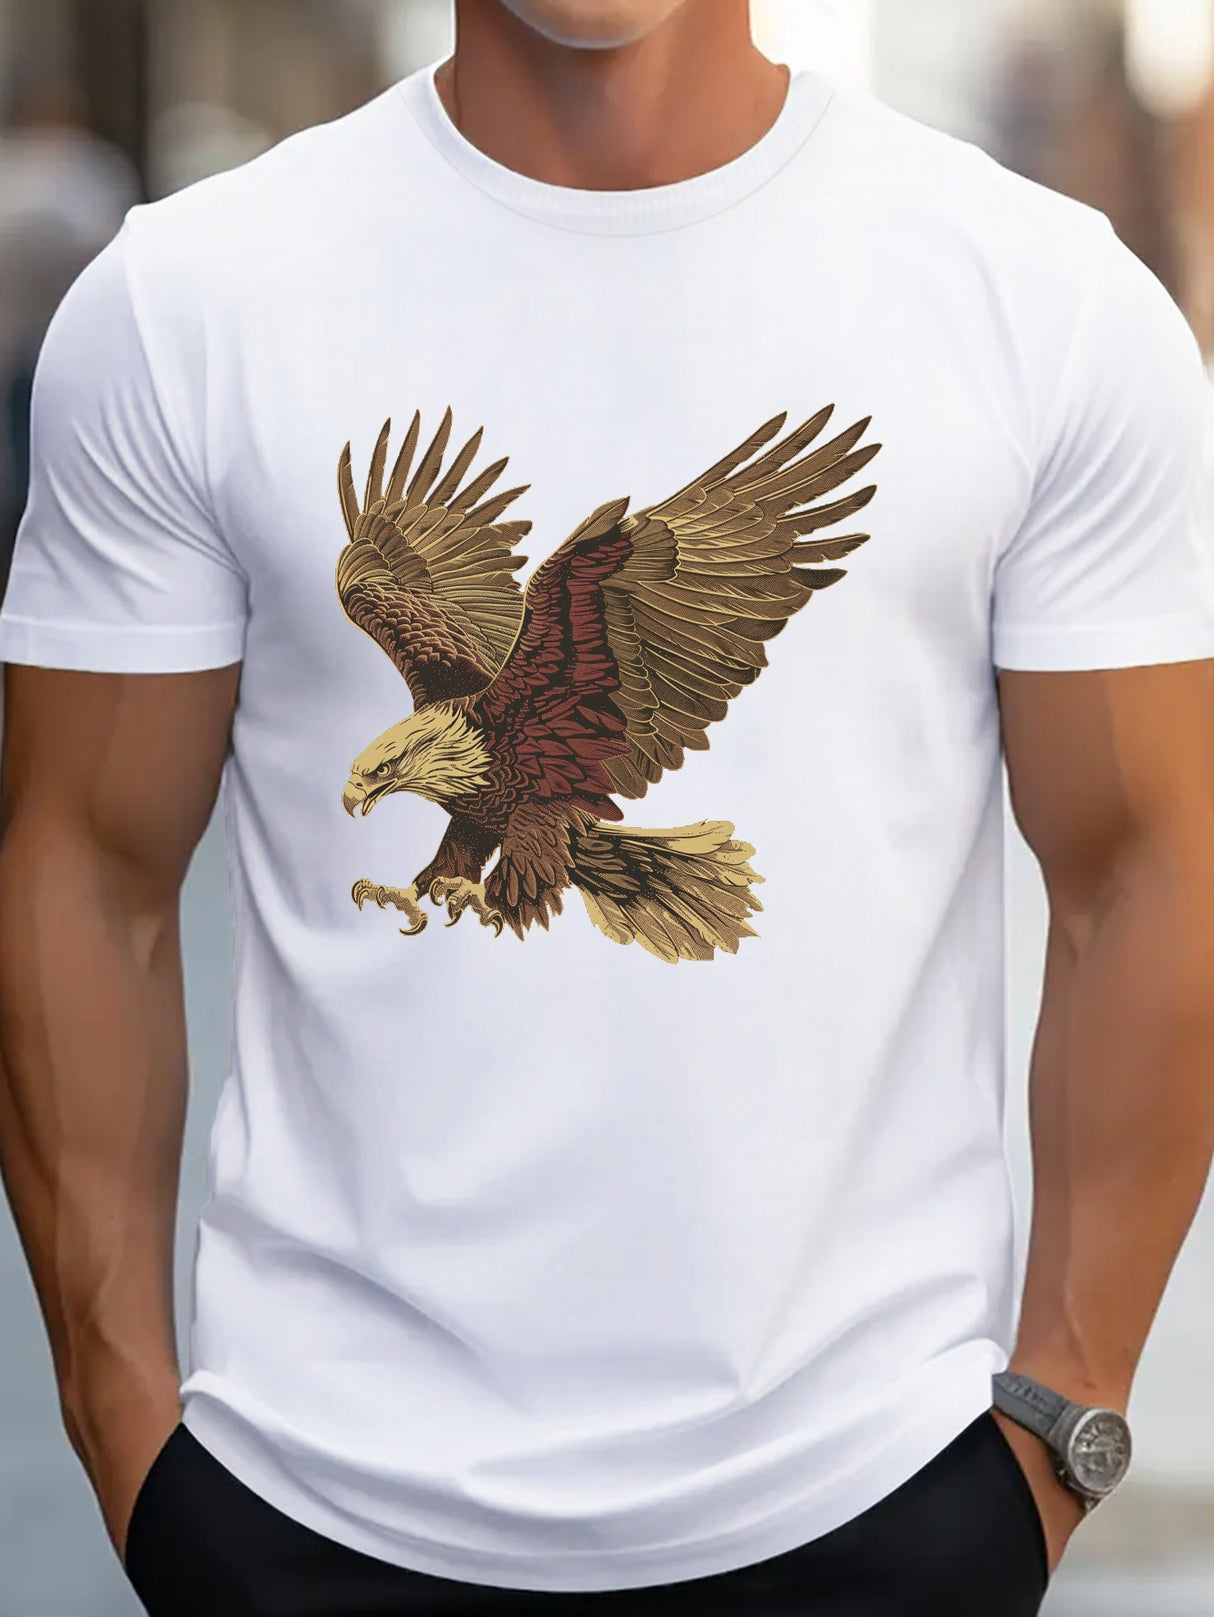 Provain Shop freedom Eagle G500 pure cotton men's T-shirt comfort fit 